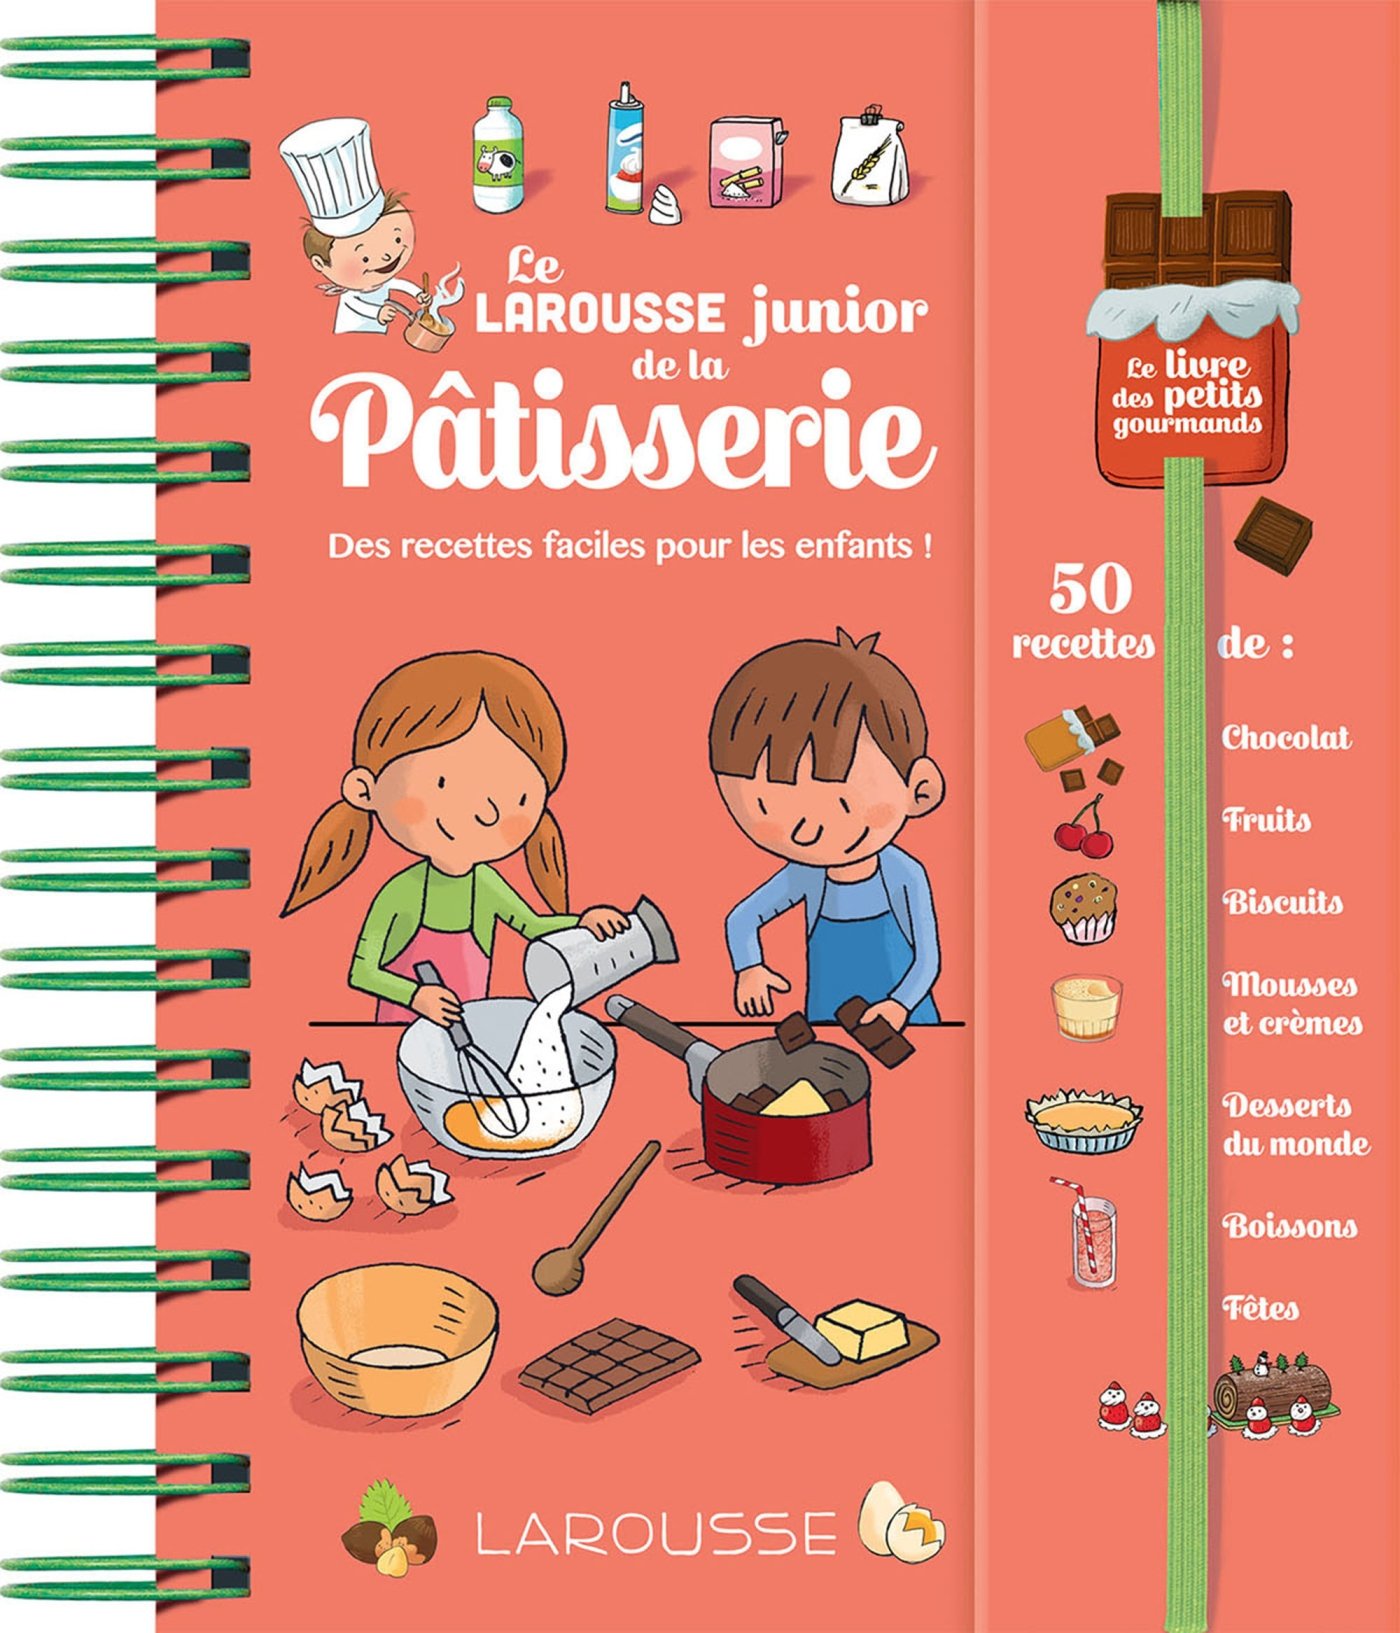 French Books Ideas - Le Larousse junior de la Pâtisserie